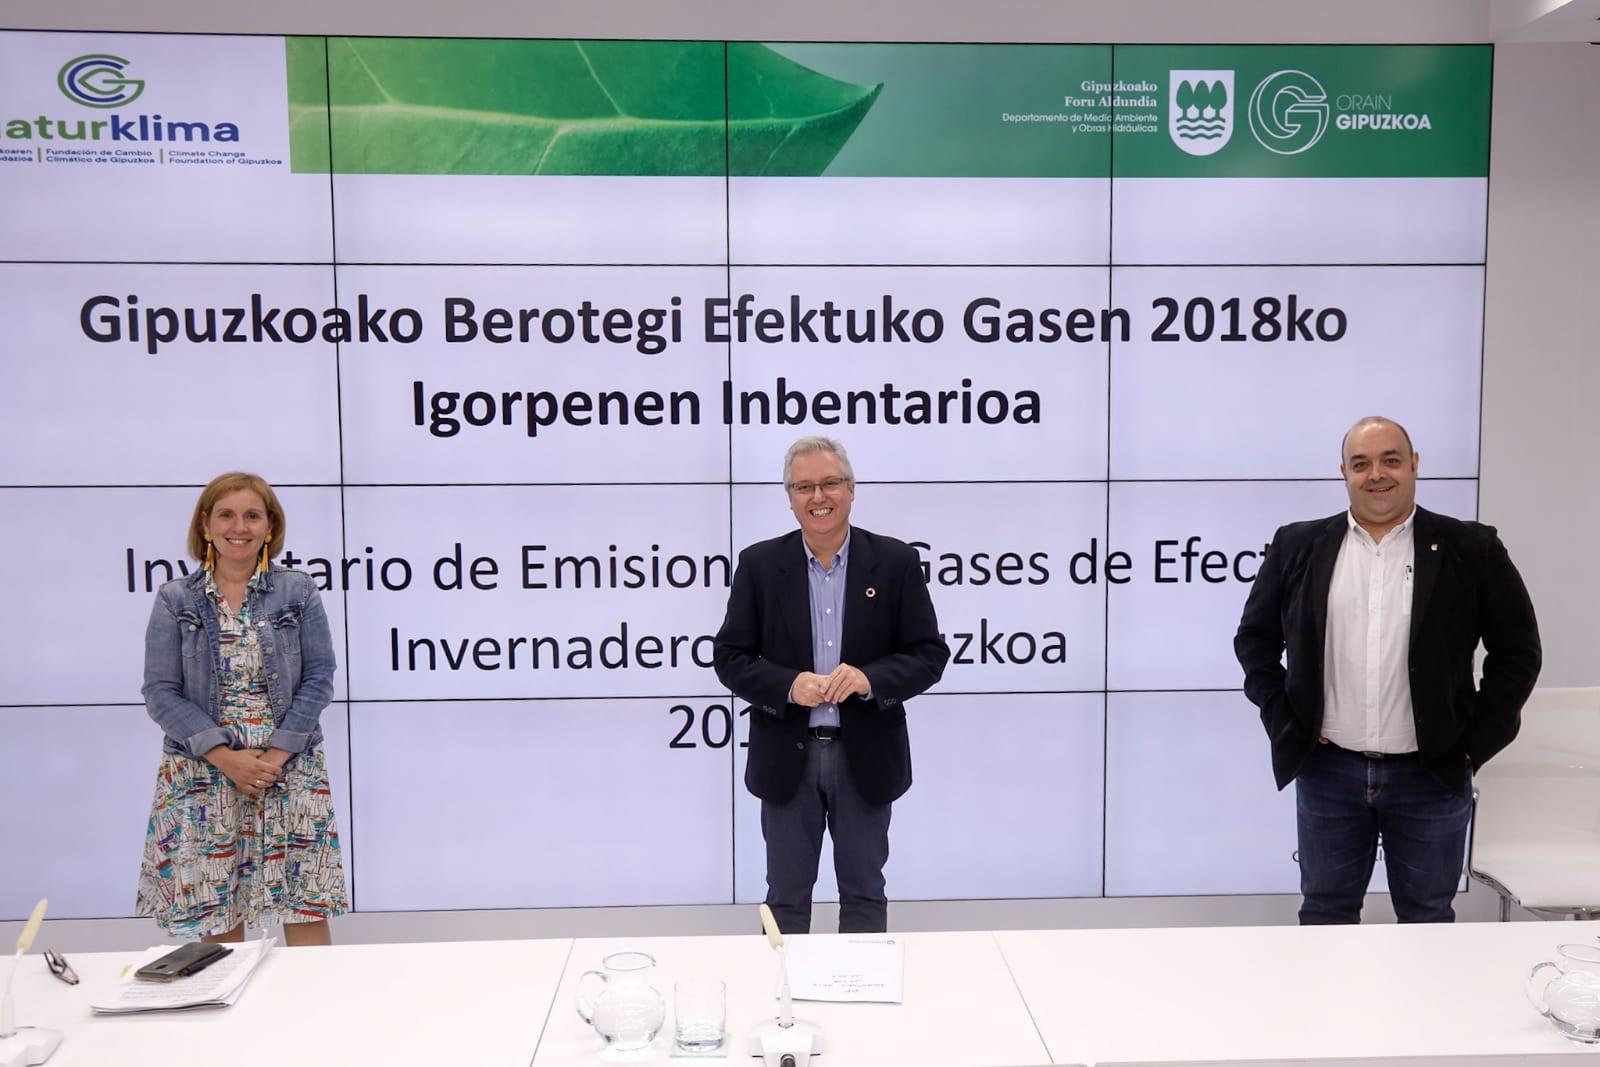 Las emisiones de gases de efecto invernadero en Gipuzkoa disminuyeron un 4,9% en el año 2018